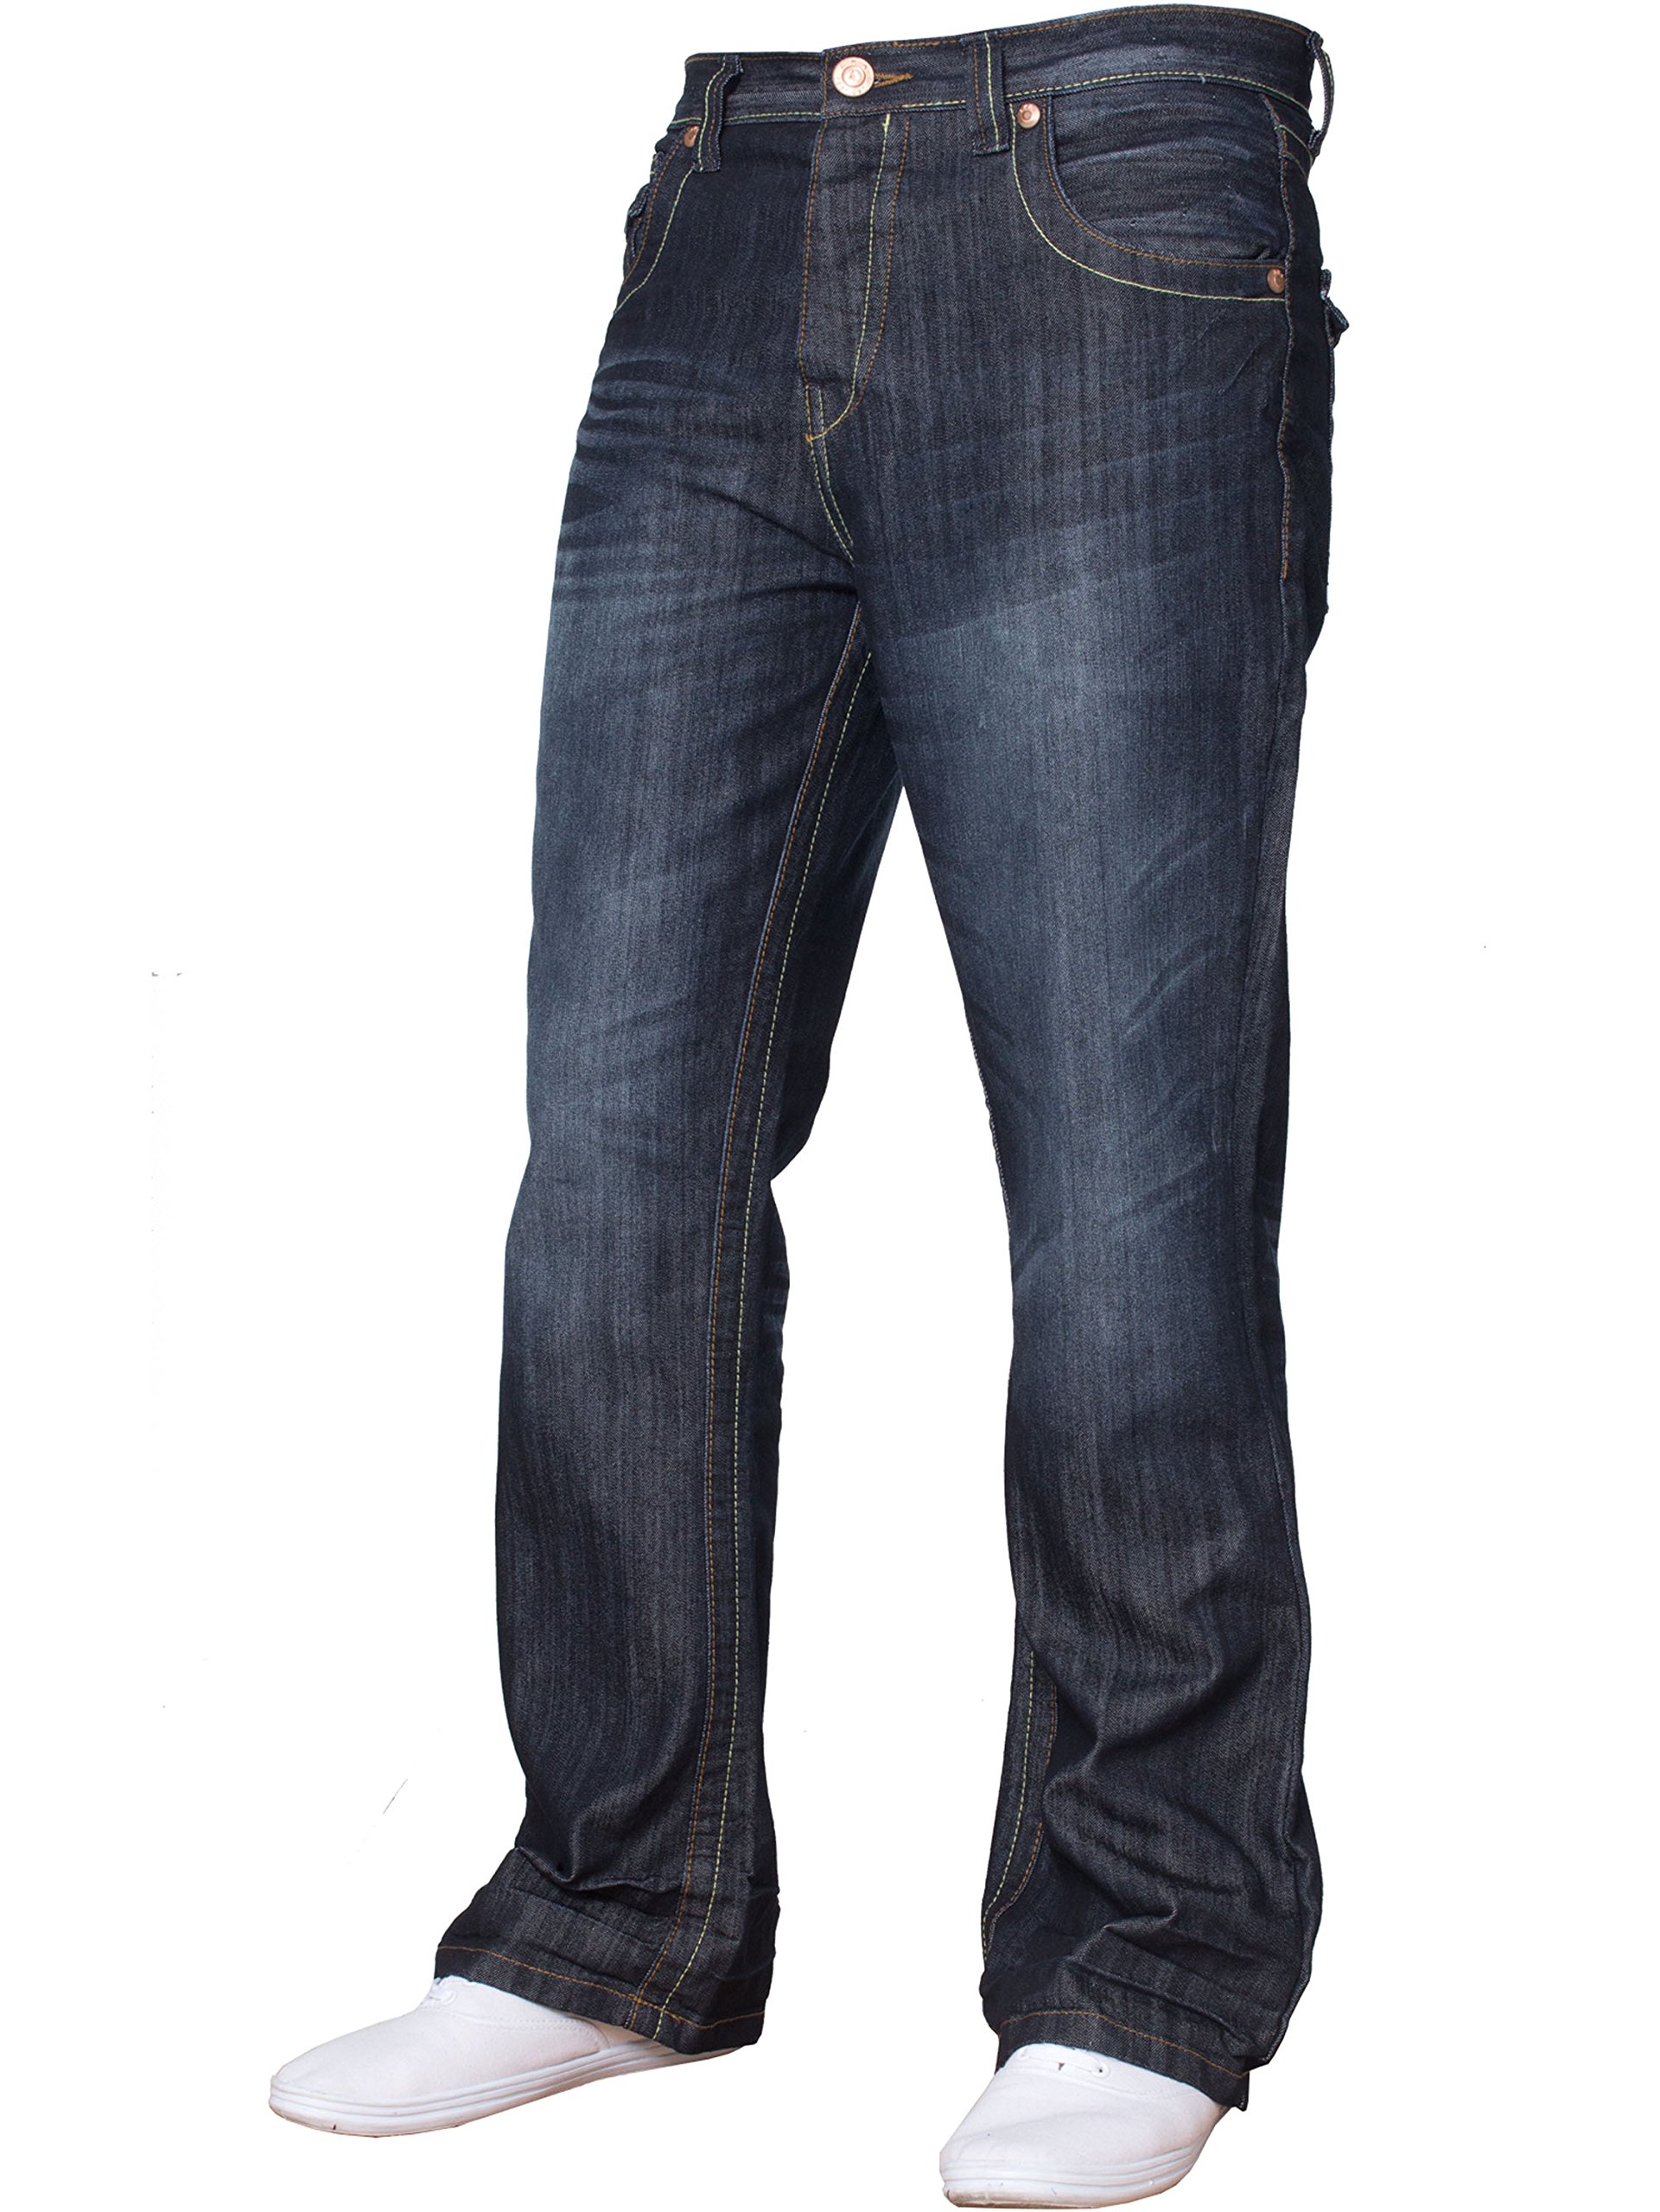 BNWT Herren-Jeans, Bootcut, ausgestellt, große King Size, weites Bein, Blau, Denim Gr. 38 W / 34 L, Dunkel gewaschen A31